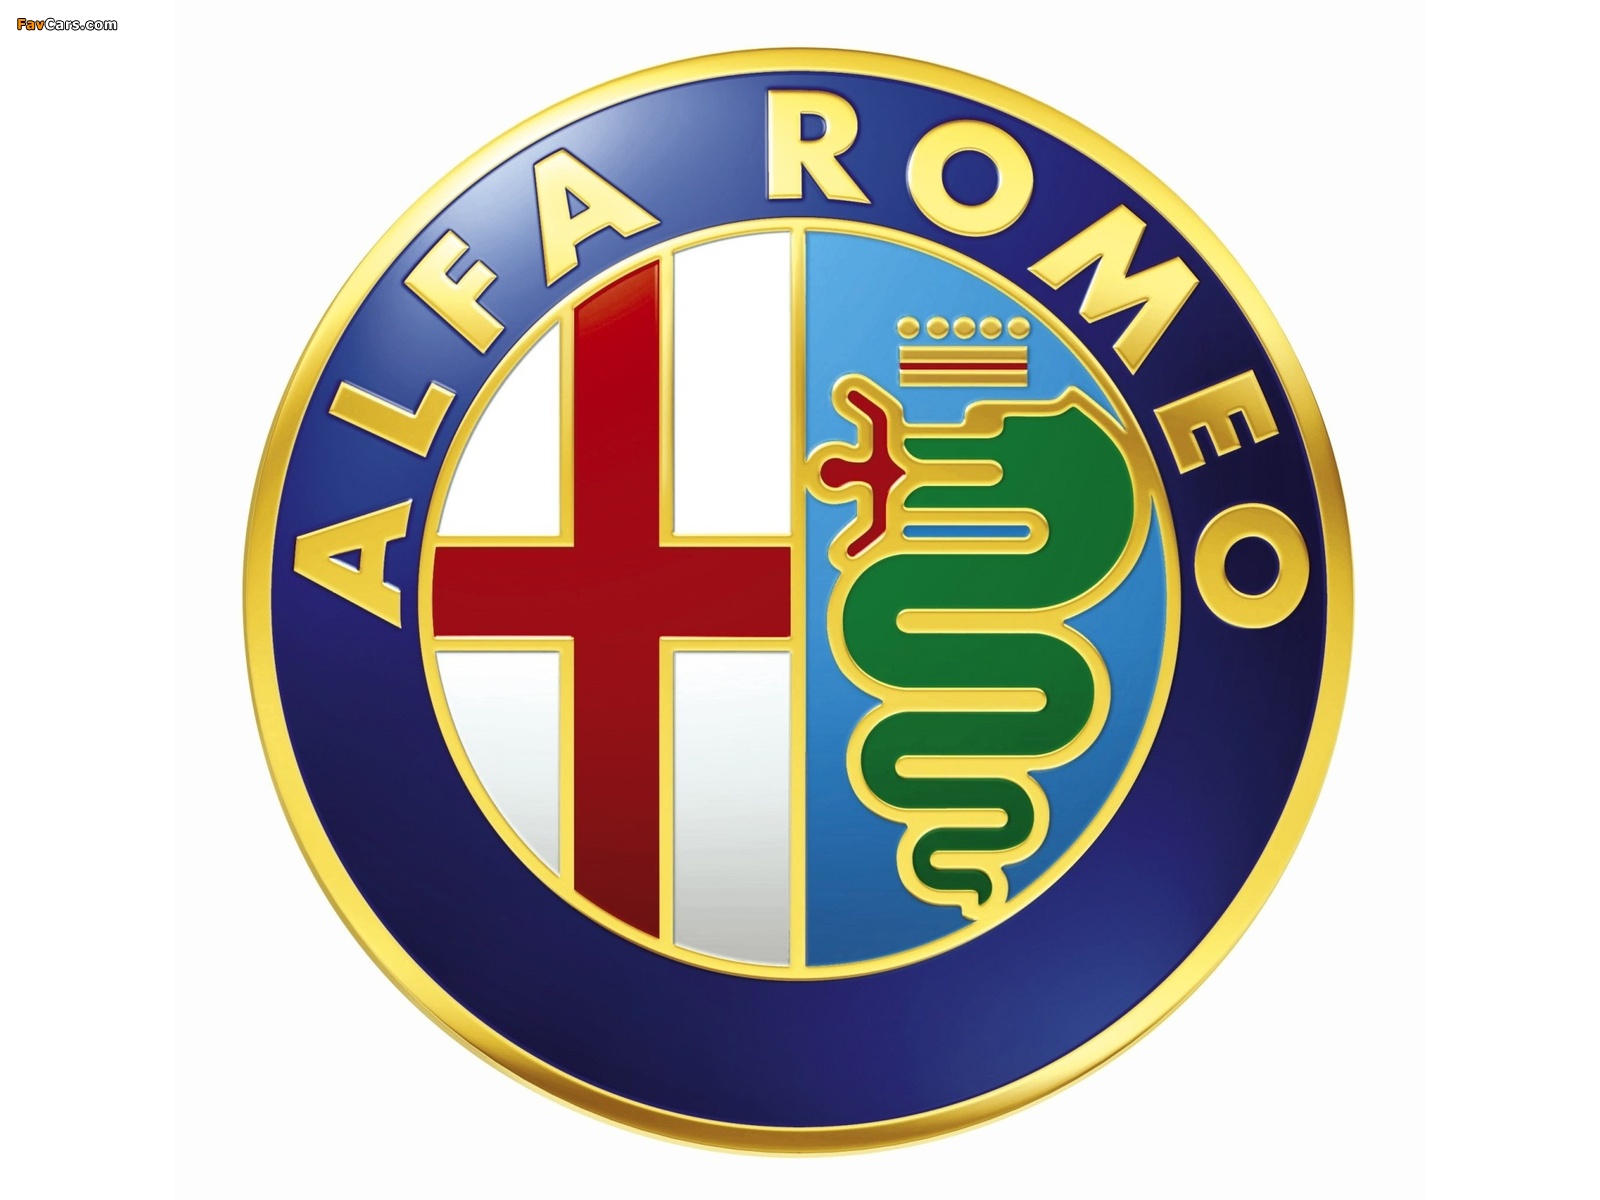 Images of Alfa Romeo (1600 x 1200)